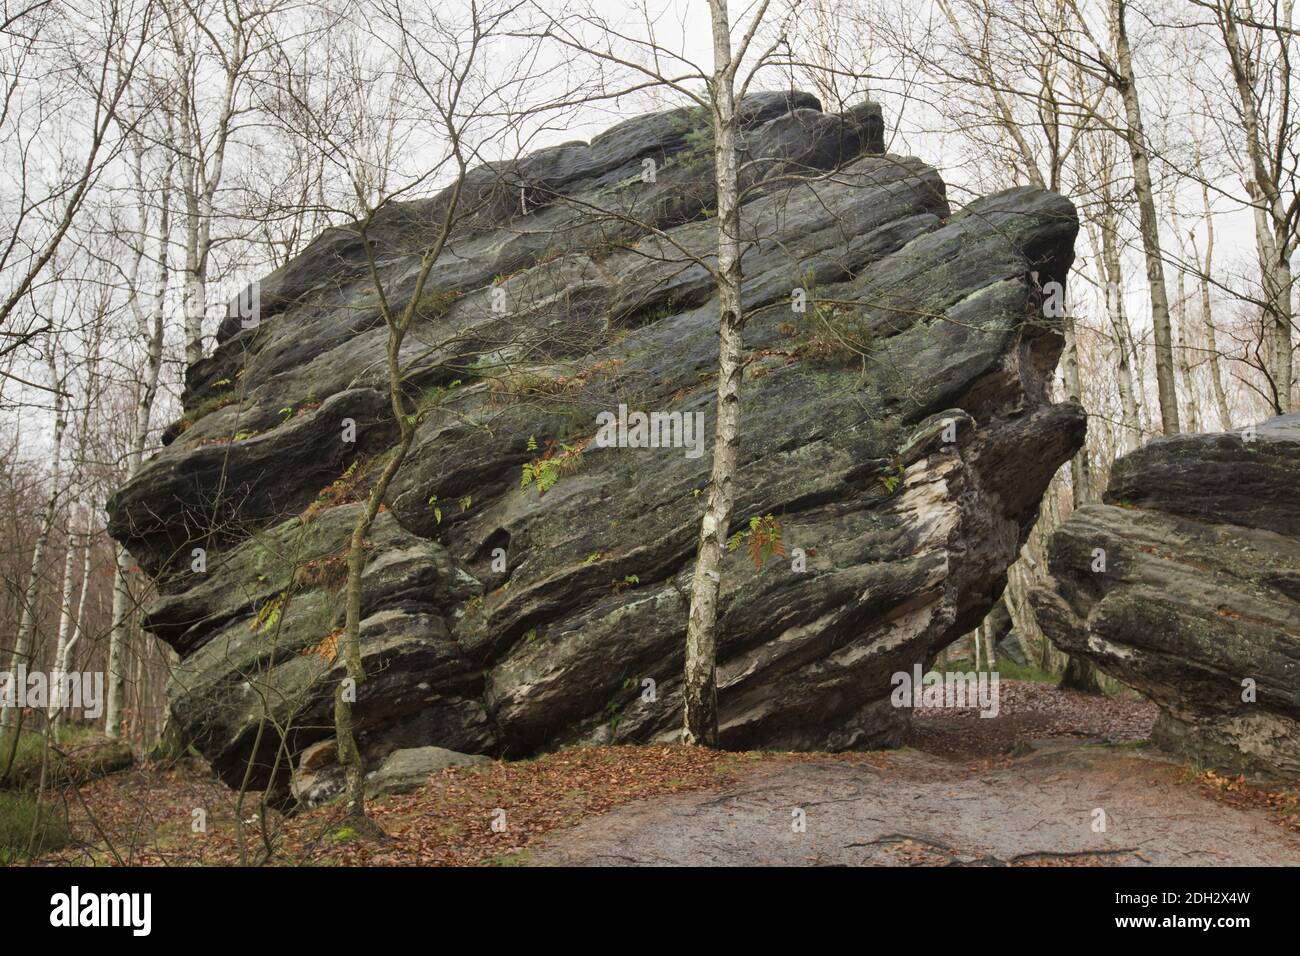 Grandi rocce di Tisa (Velké Tiské stěny) nella Svizzera boema (České Švýcarsko) nella Boemia settentrionale, Repubblica Ceca. Foto Stock